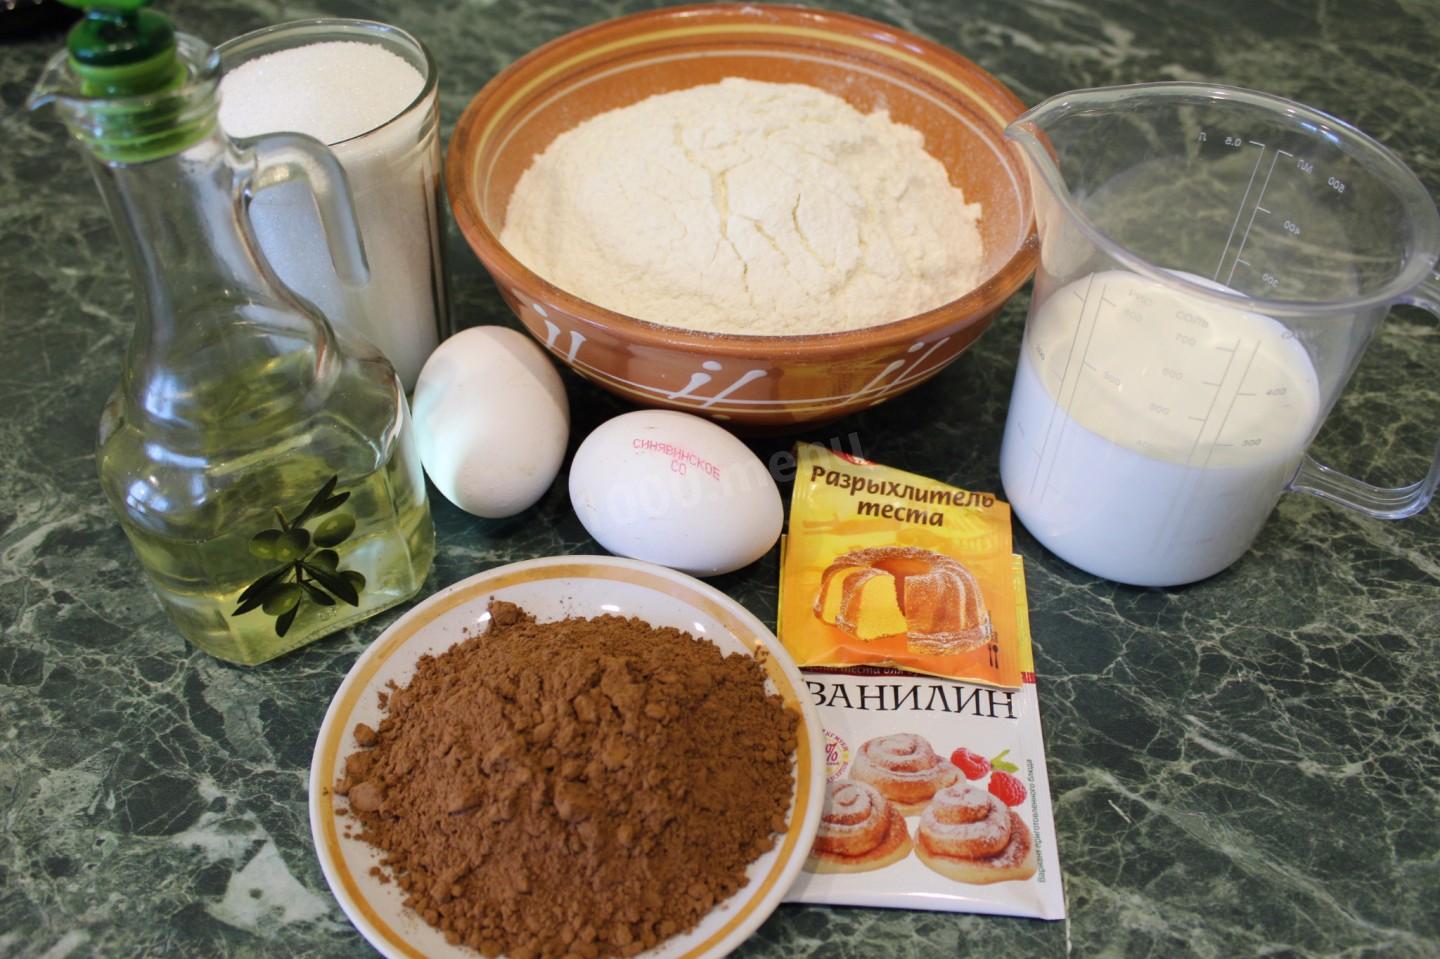 Сахар мука масло без яиц. Продукты для теста. Яичный порошок тесто. Какао сахар мука молоко масло. Фото мука сливки для торта.